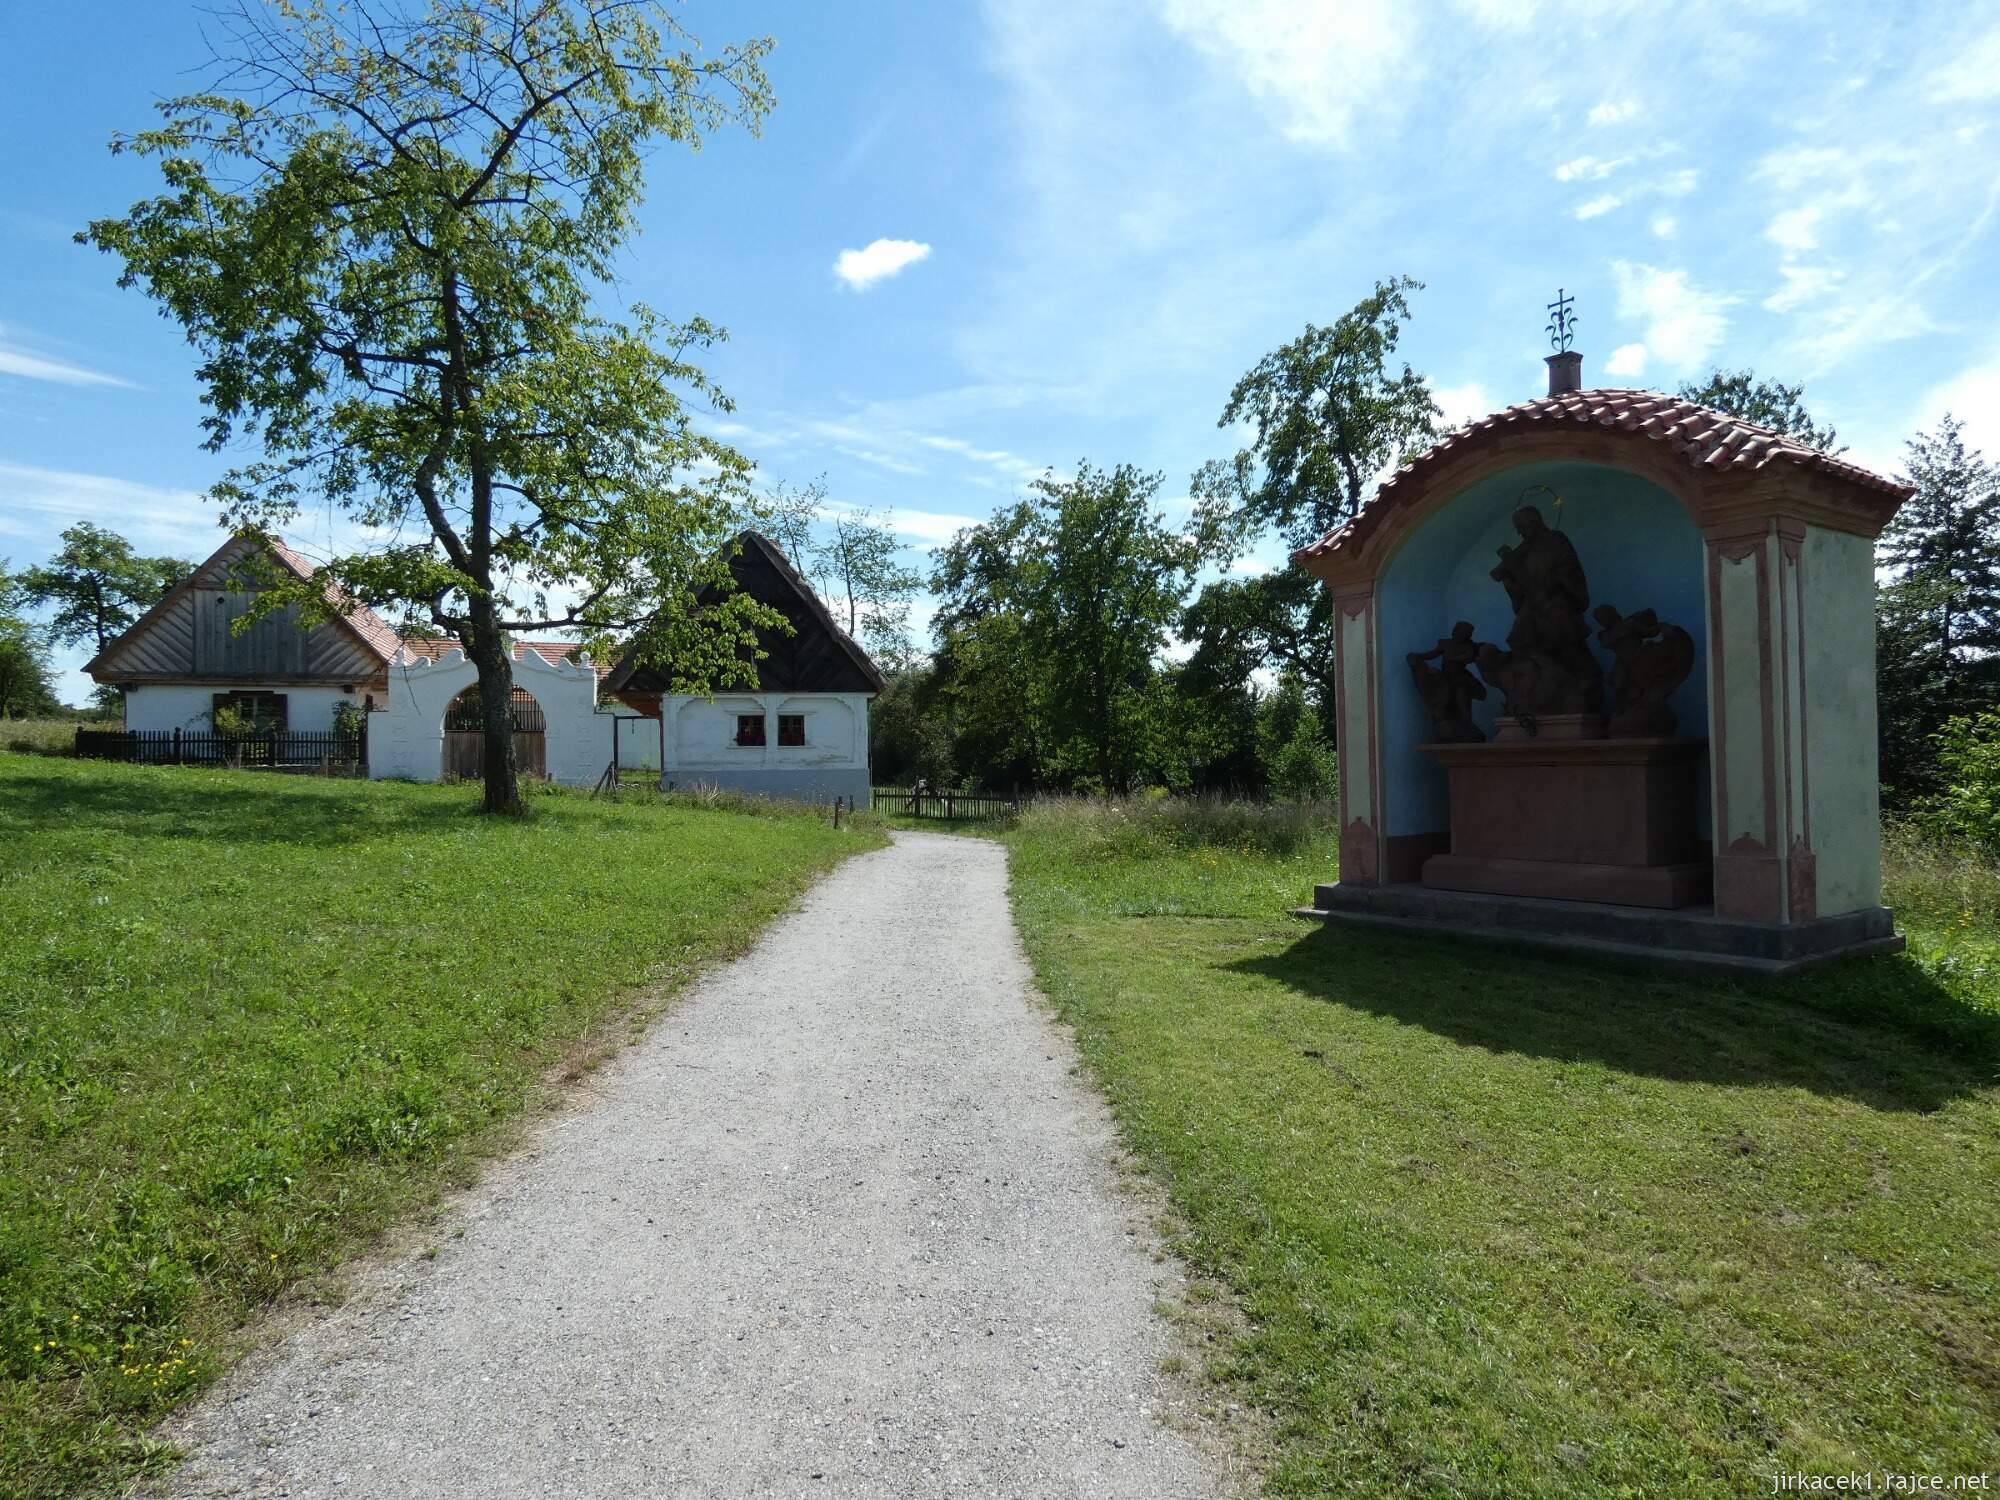 N - Kouřim - skanzen a muzeum lidových staveb 060 - výklenková kaplička se sousoším sv. Jana Nepomuckého